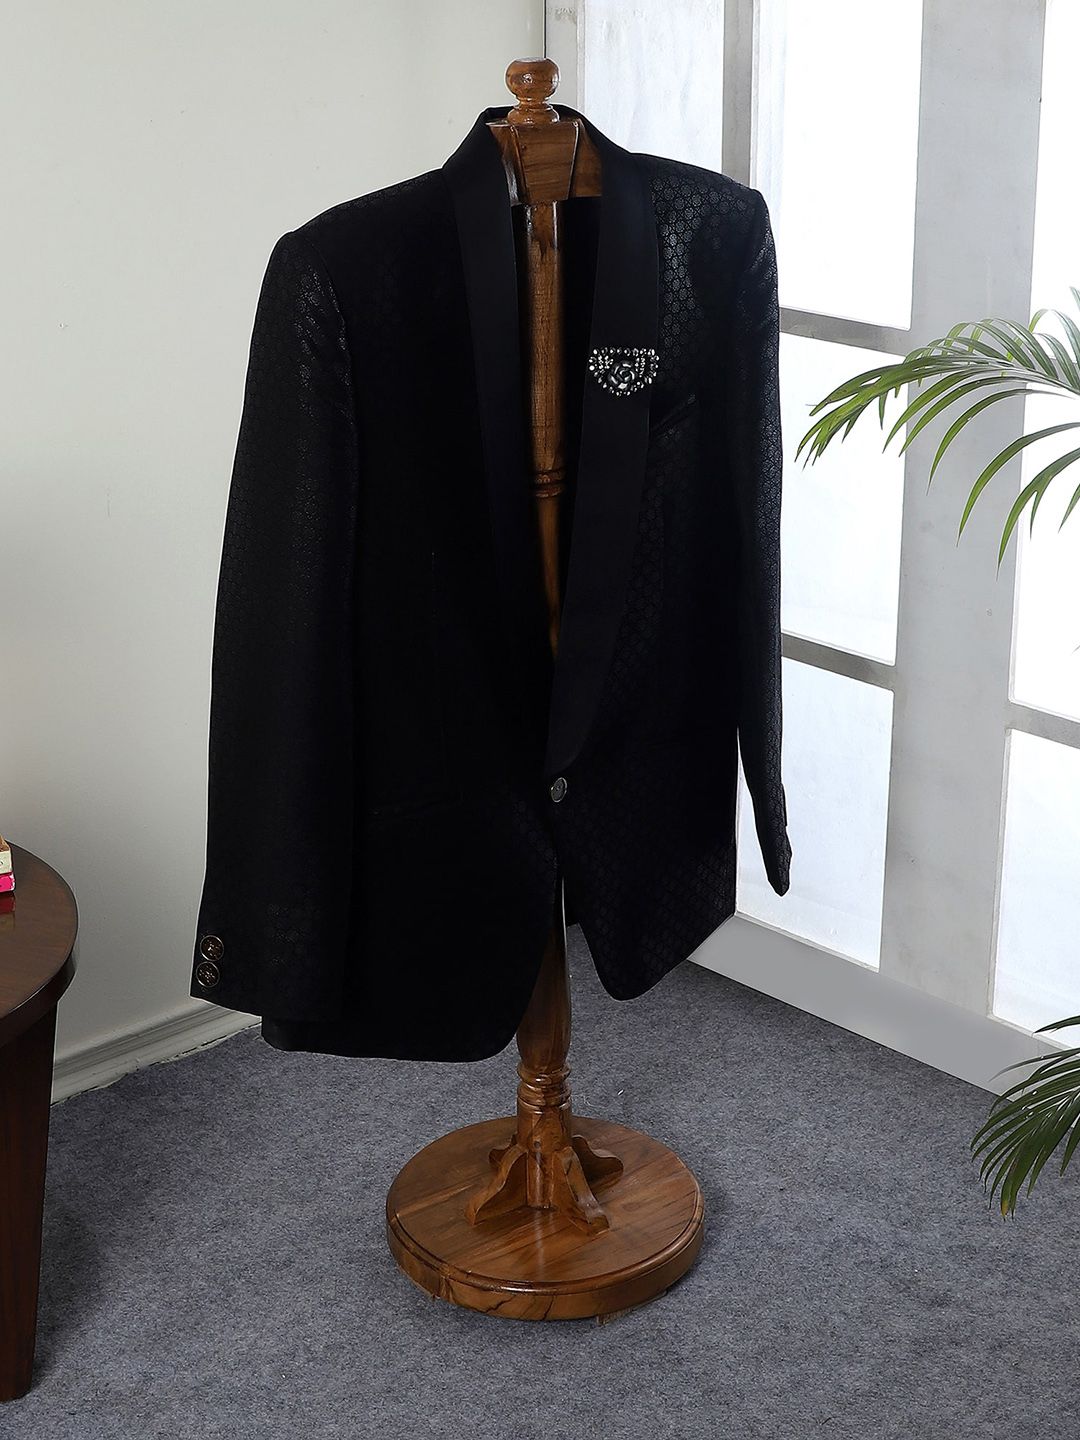 BEVERLY STUDIO Brown Teak Wooden Coat Stand Cloth Hanger Price in India